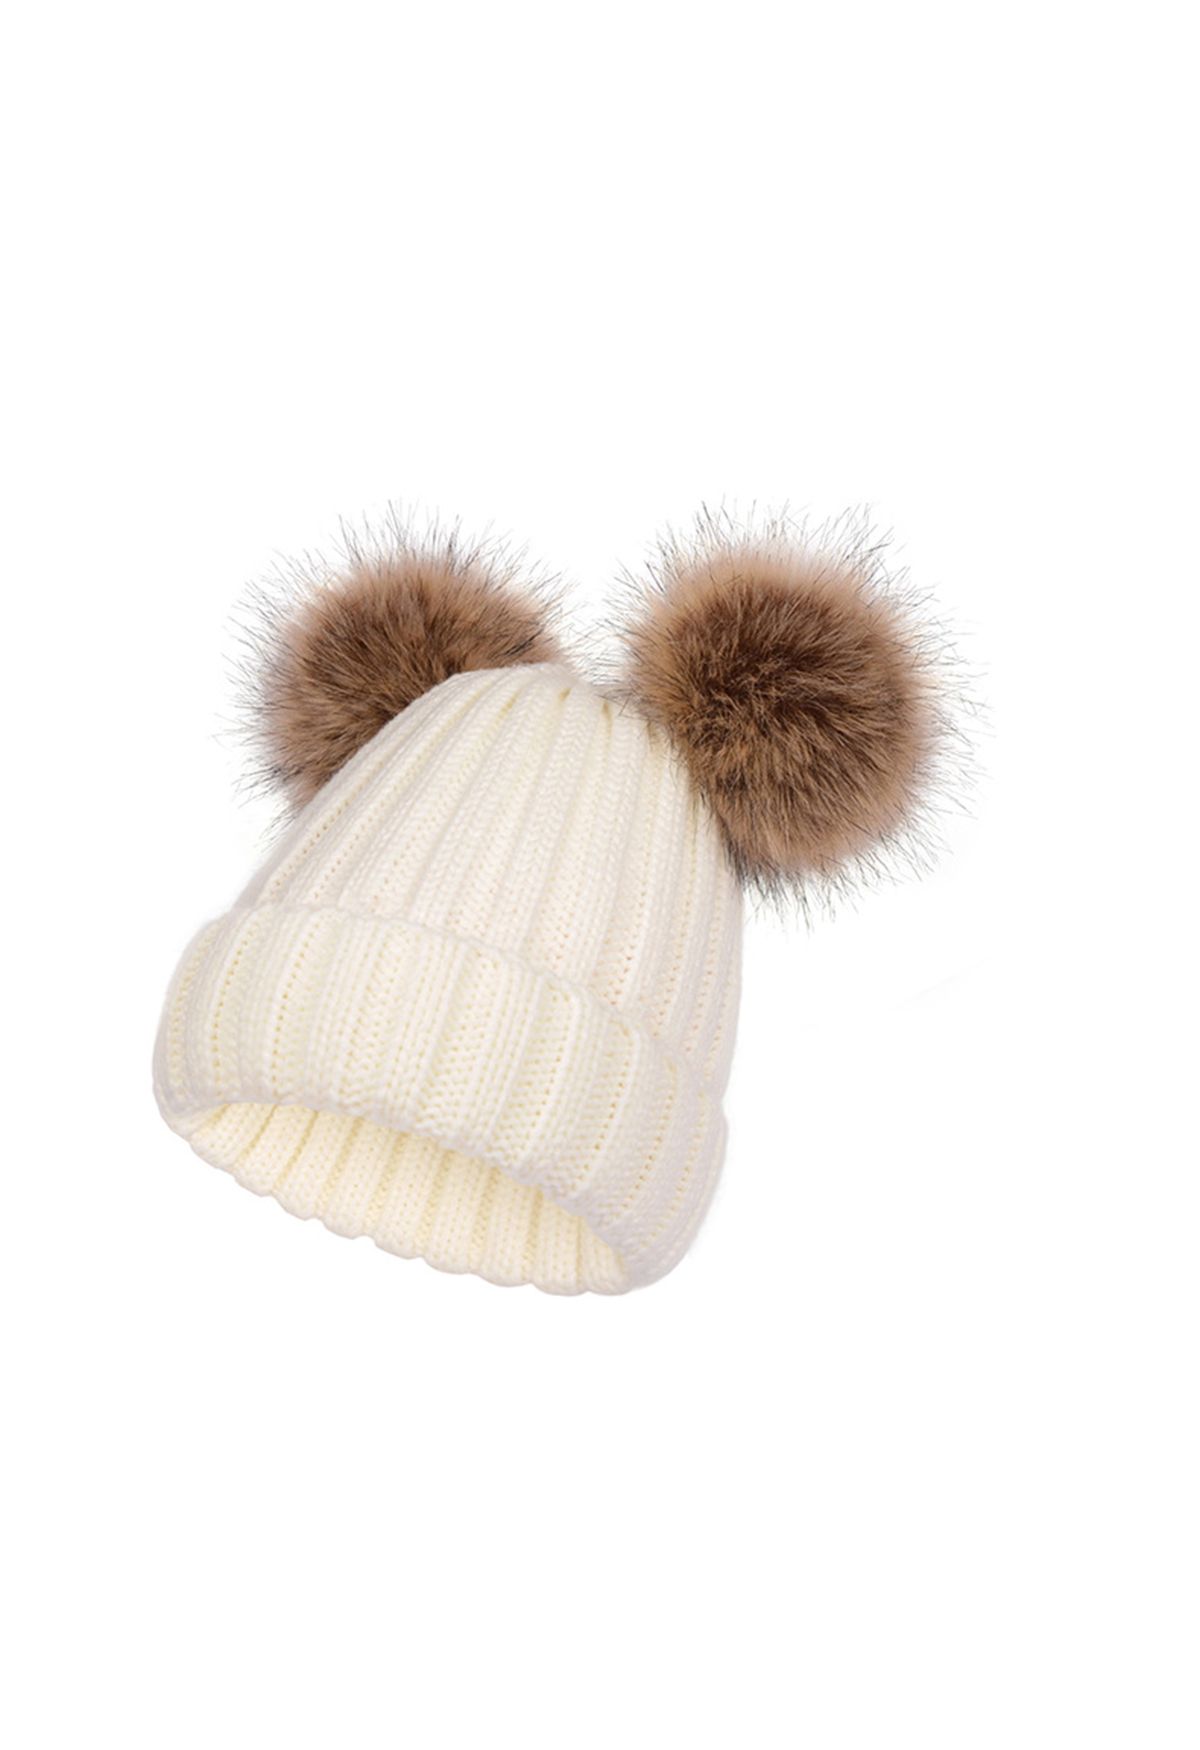 Fuzzy Pom-Pom Knit Beanie Hat in Ivory